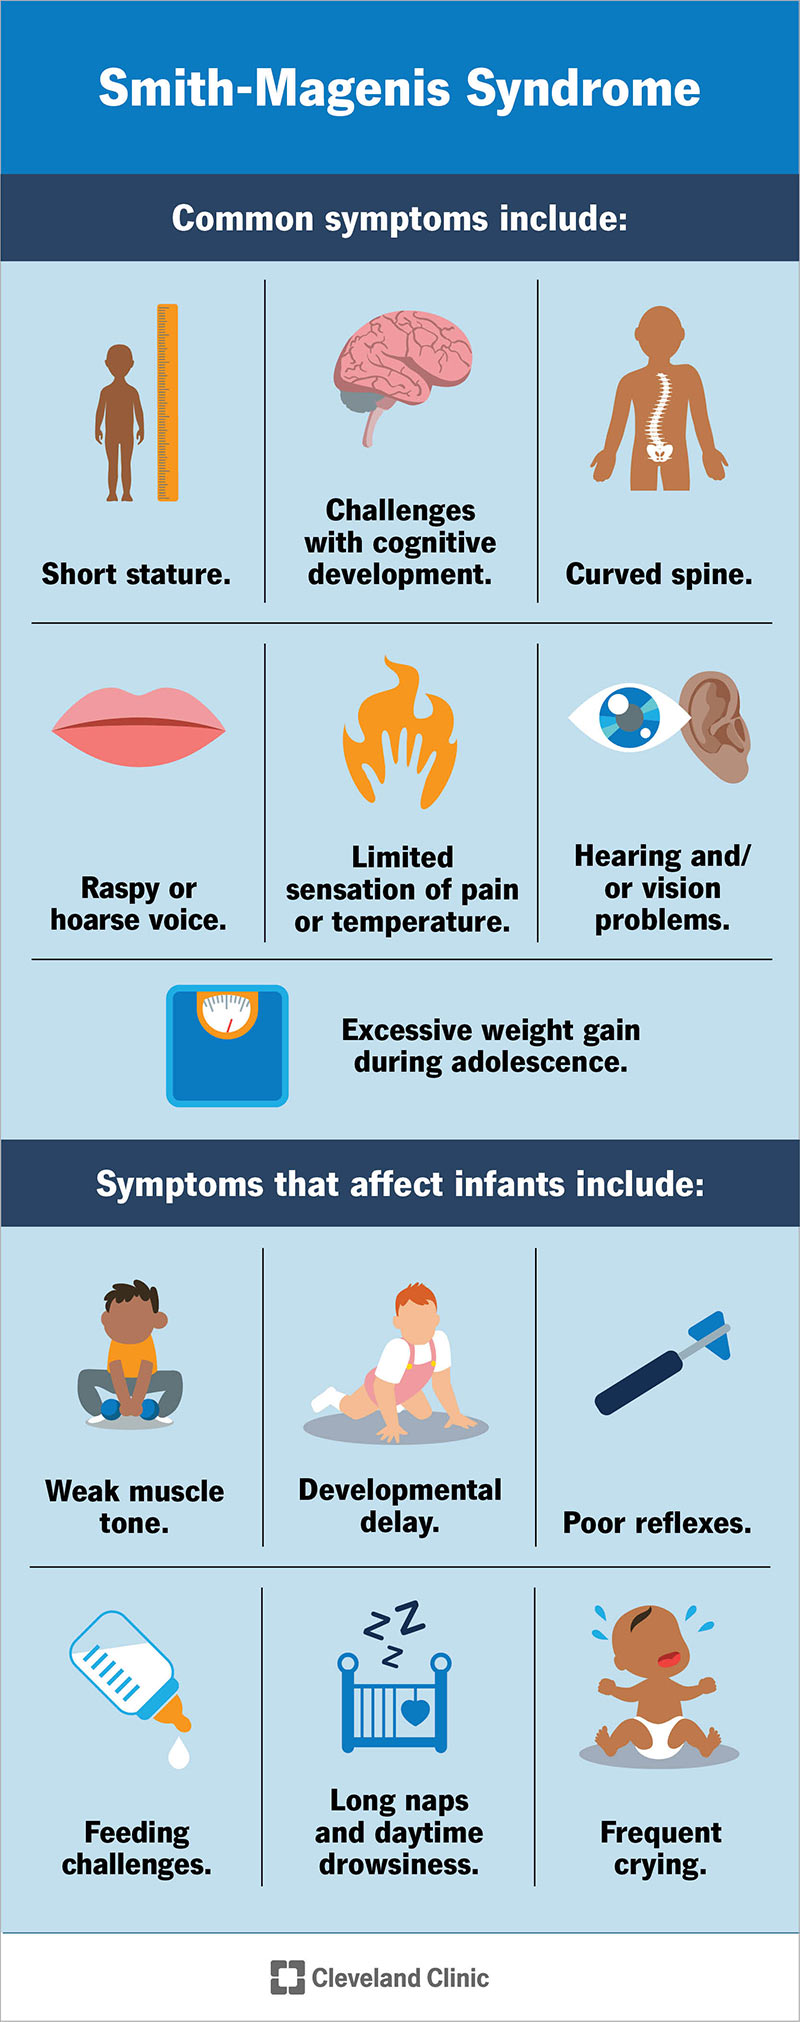 I sintomi comuni della sindrome di Smith-Magenis possono colpire diverse parti del corpo di un bambino.